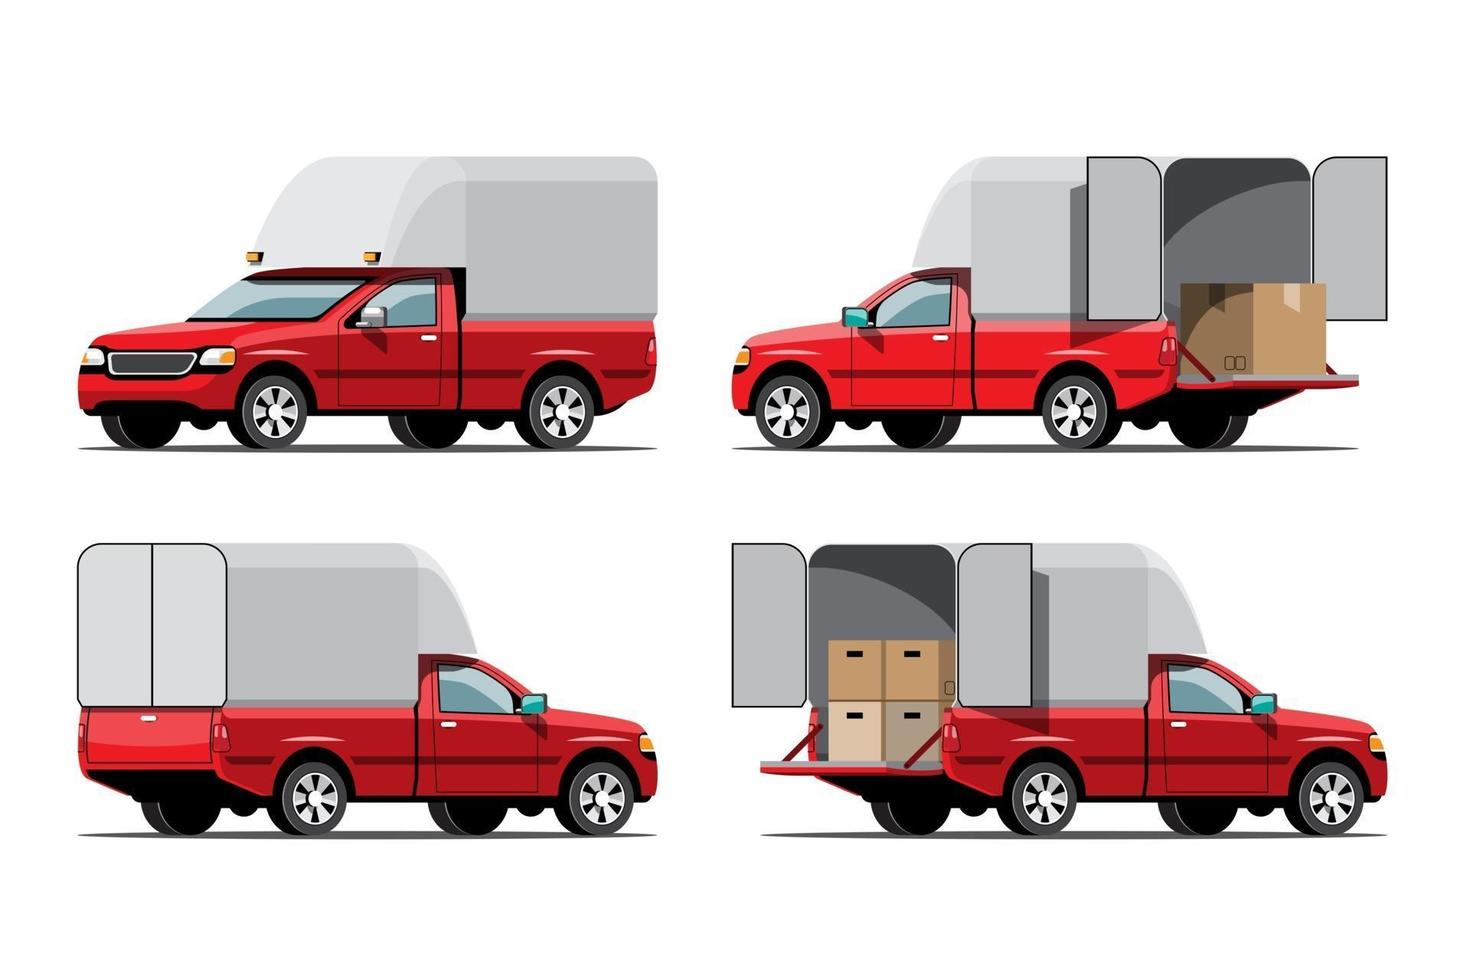 grote geïsoleerde voertuig vector iconen set, platte illustraties verschillende weergave van bestelwagen, logistiek commercieel vervoersconcept.